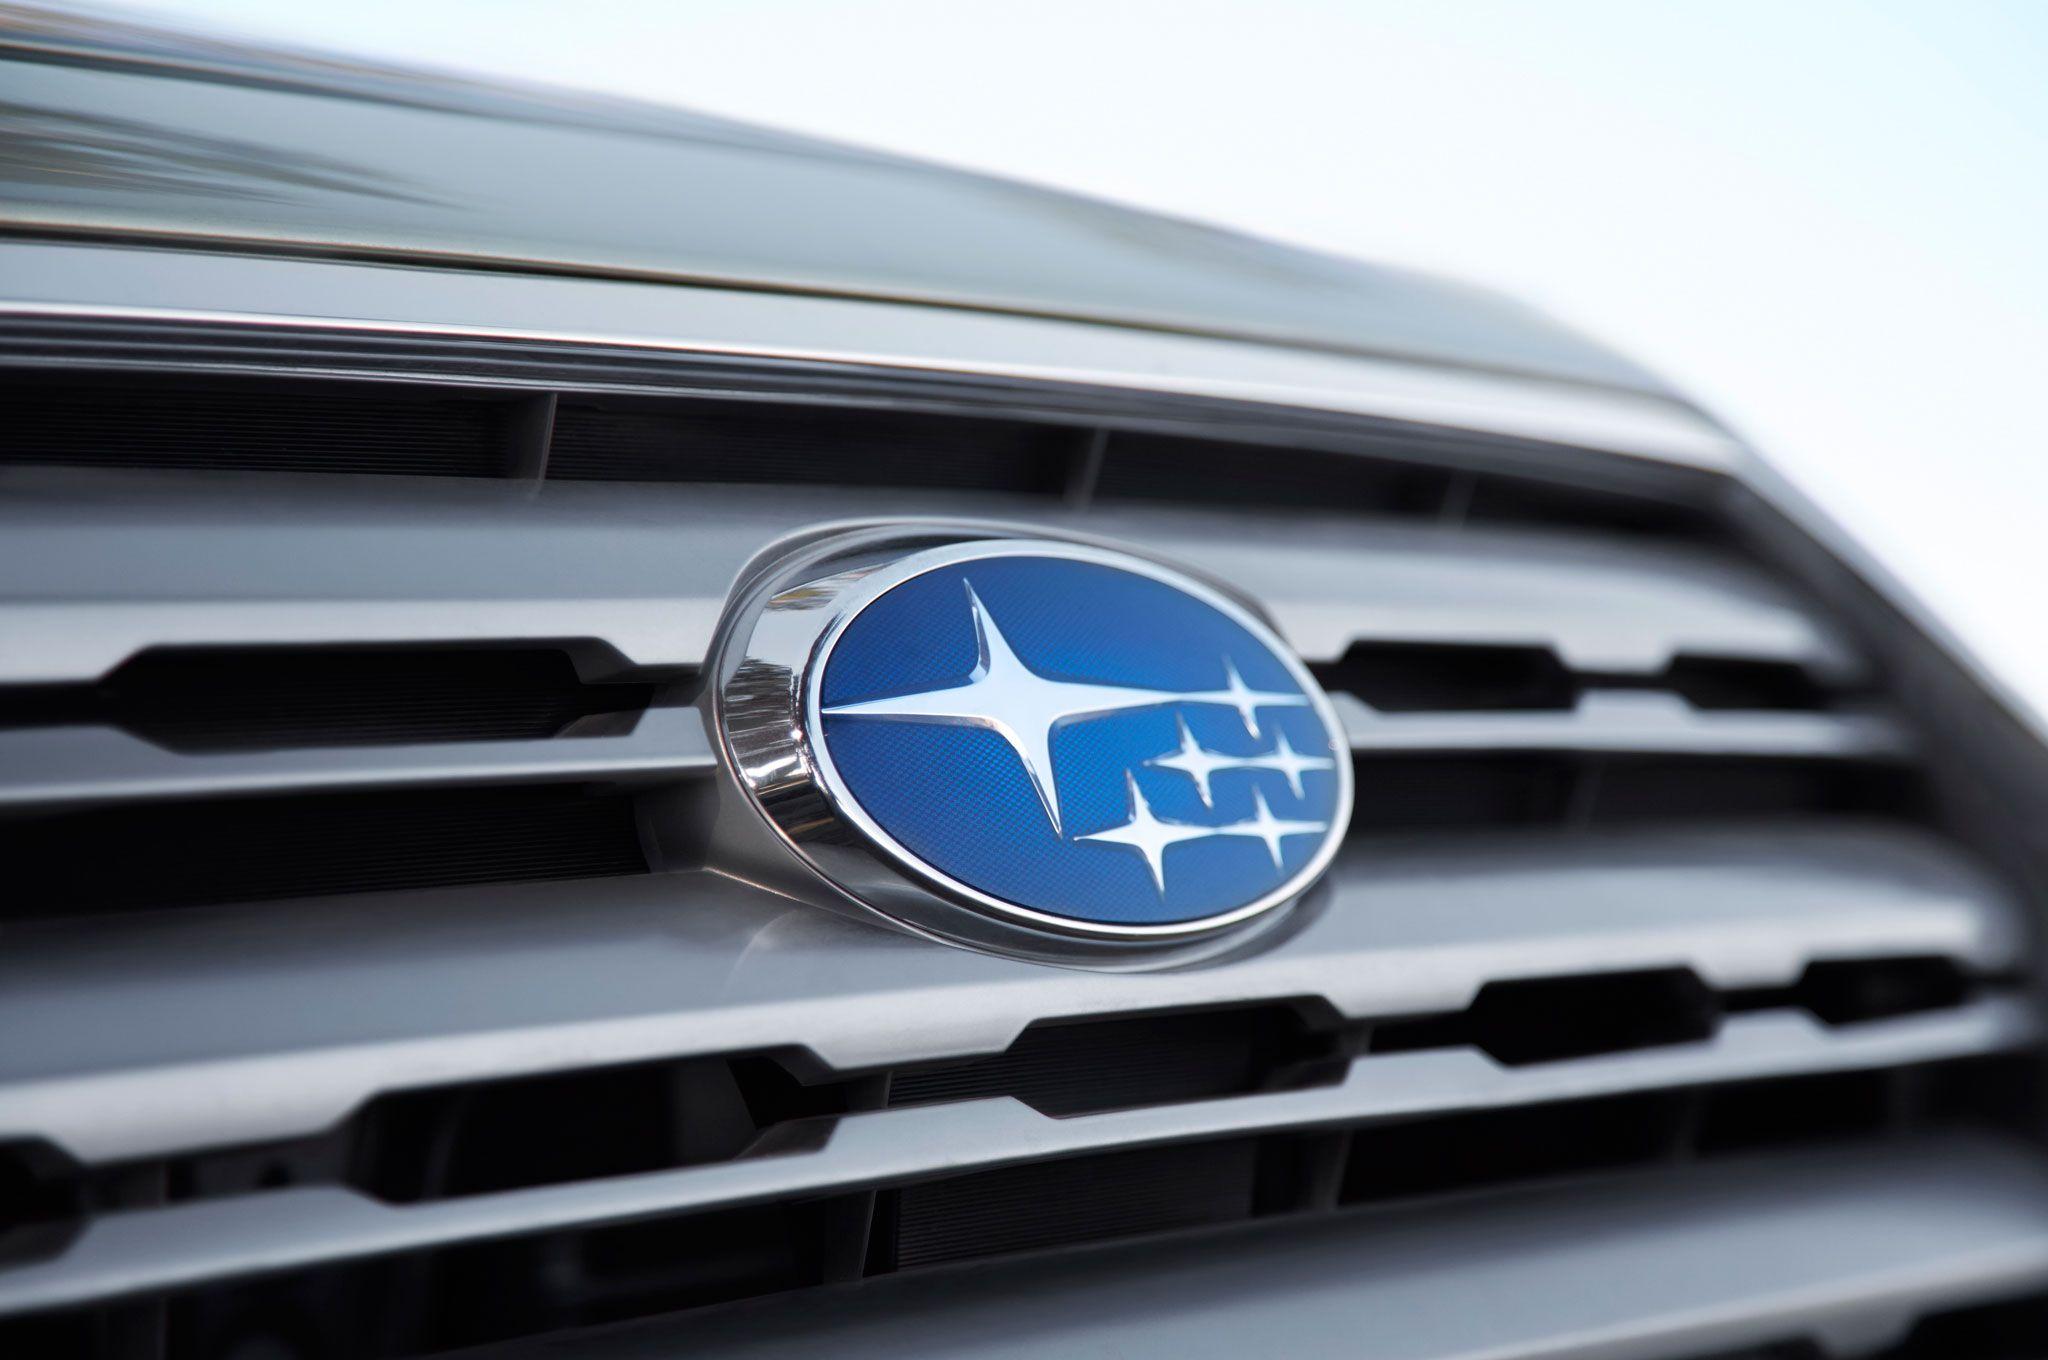 Subaru Grill Logo - Subaru Parent Company Fuji Heavy Industries Renamed Subaru ...